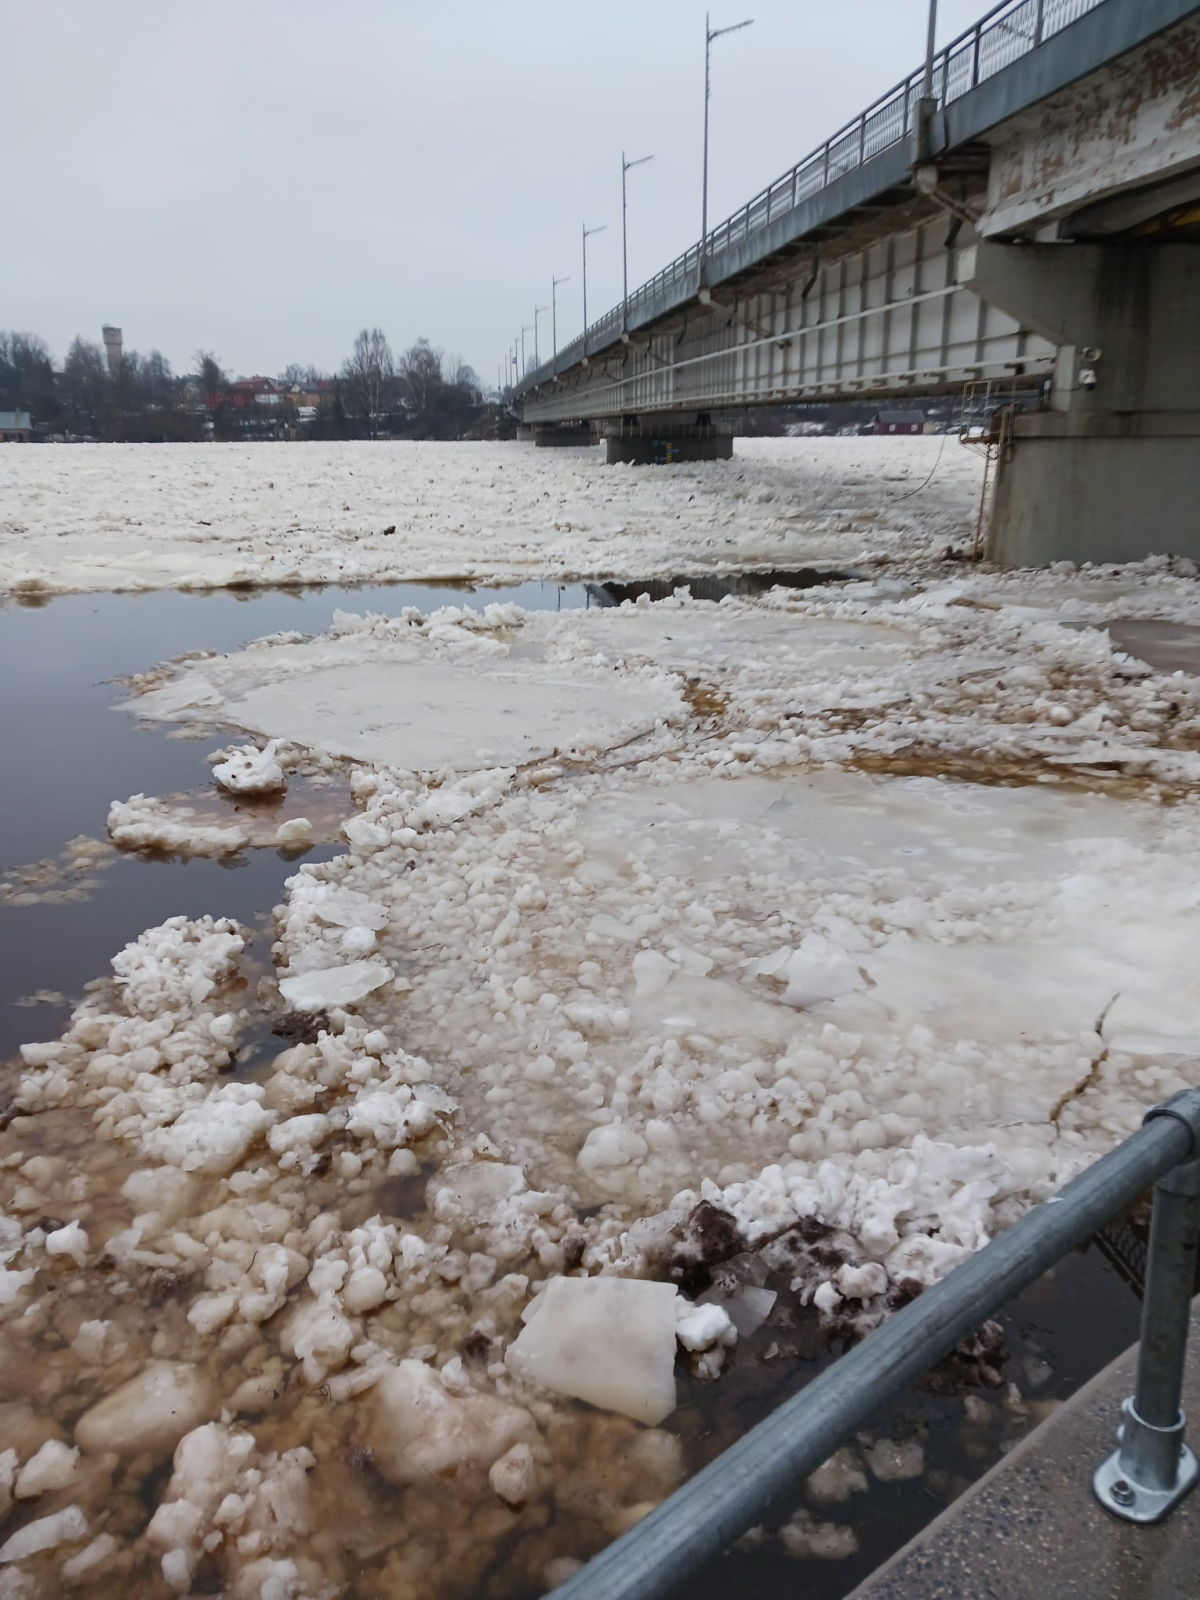 Iedzīvotāji jautā: Vai turpinot paaugstināties ūdens līmenim Daugavā, pastāv iespēja, ka tiks slēgts tilts pār Daugavu?